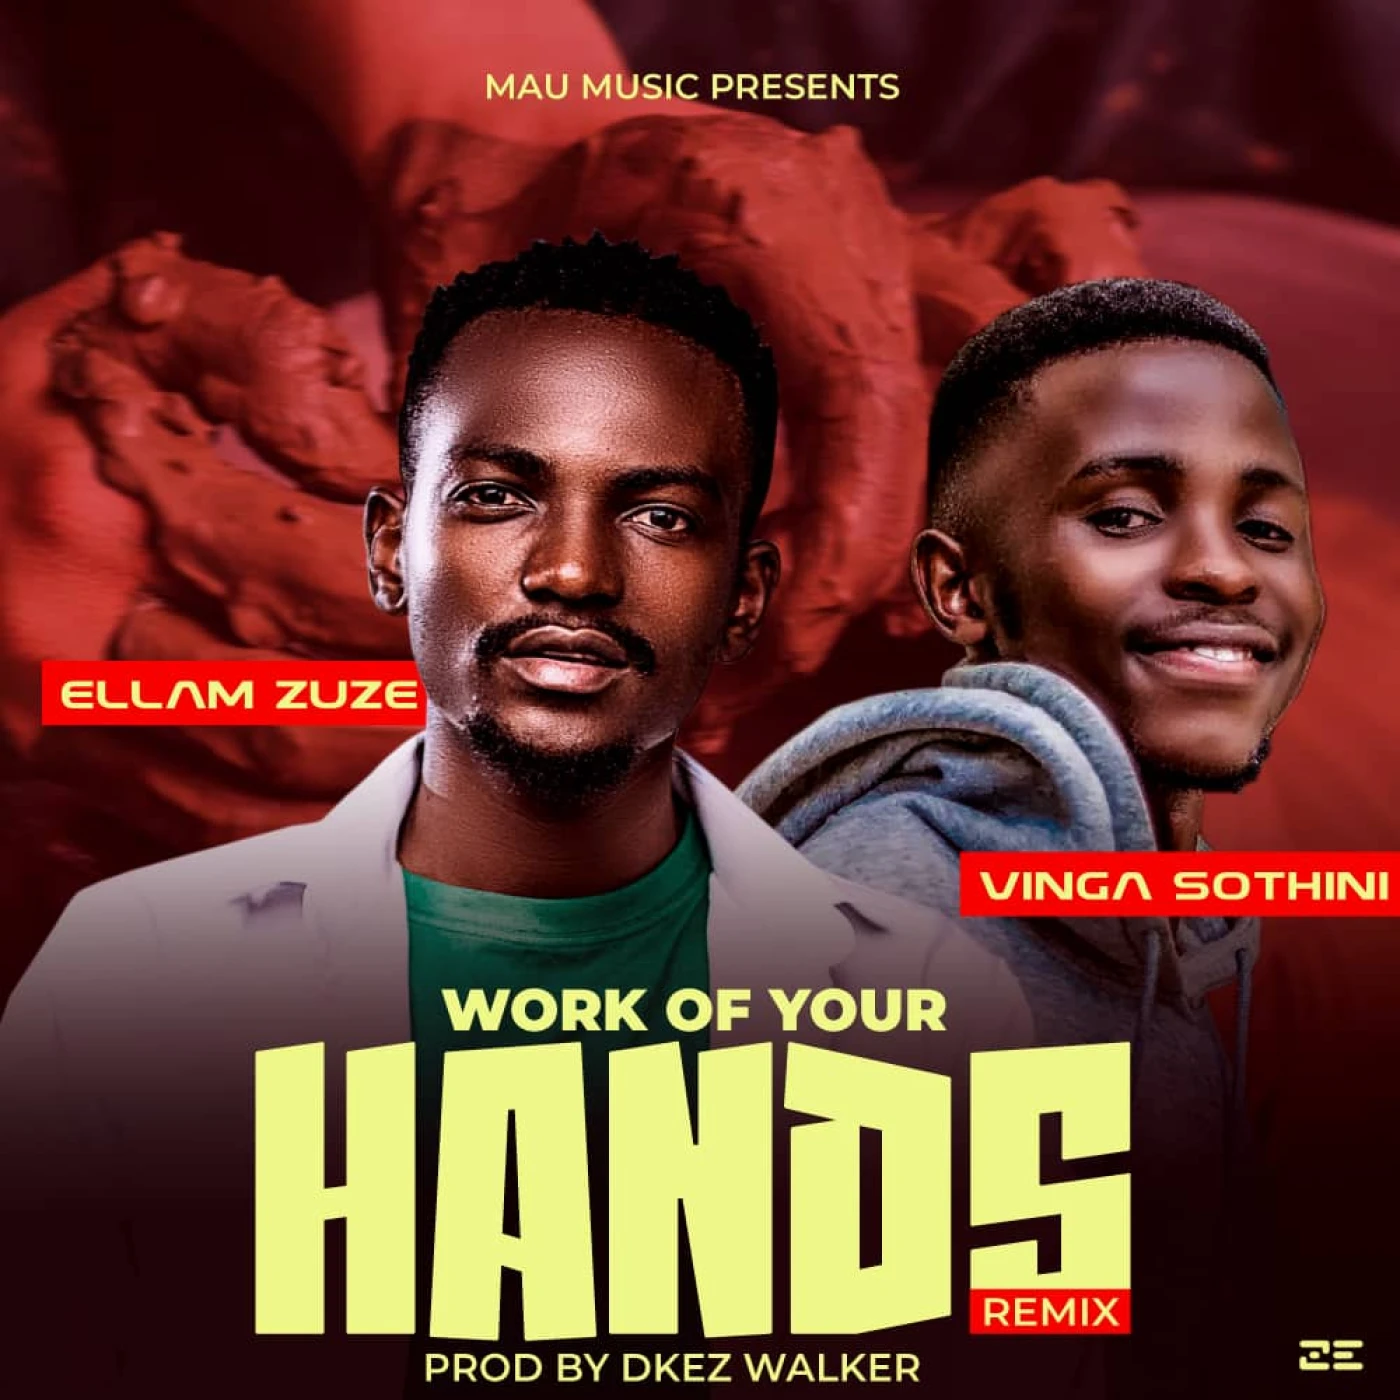 work-of-your-hands-remix-ellam-zuze-ft-vinga-sothini-ellam-zuze-Just Malawi Music